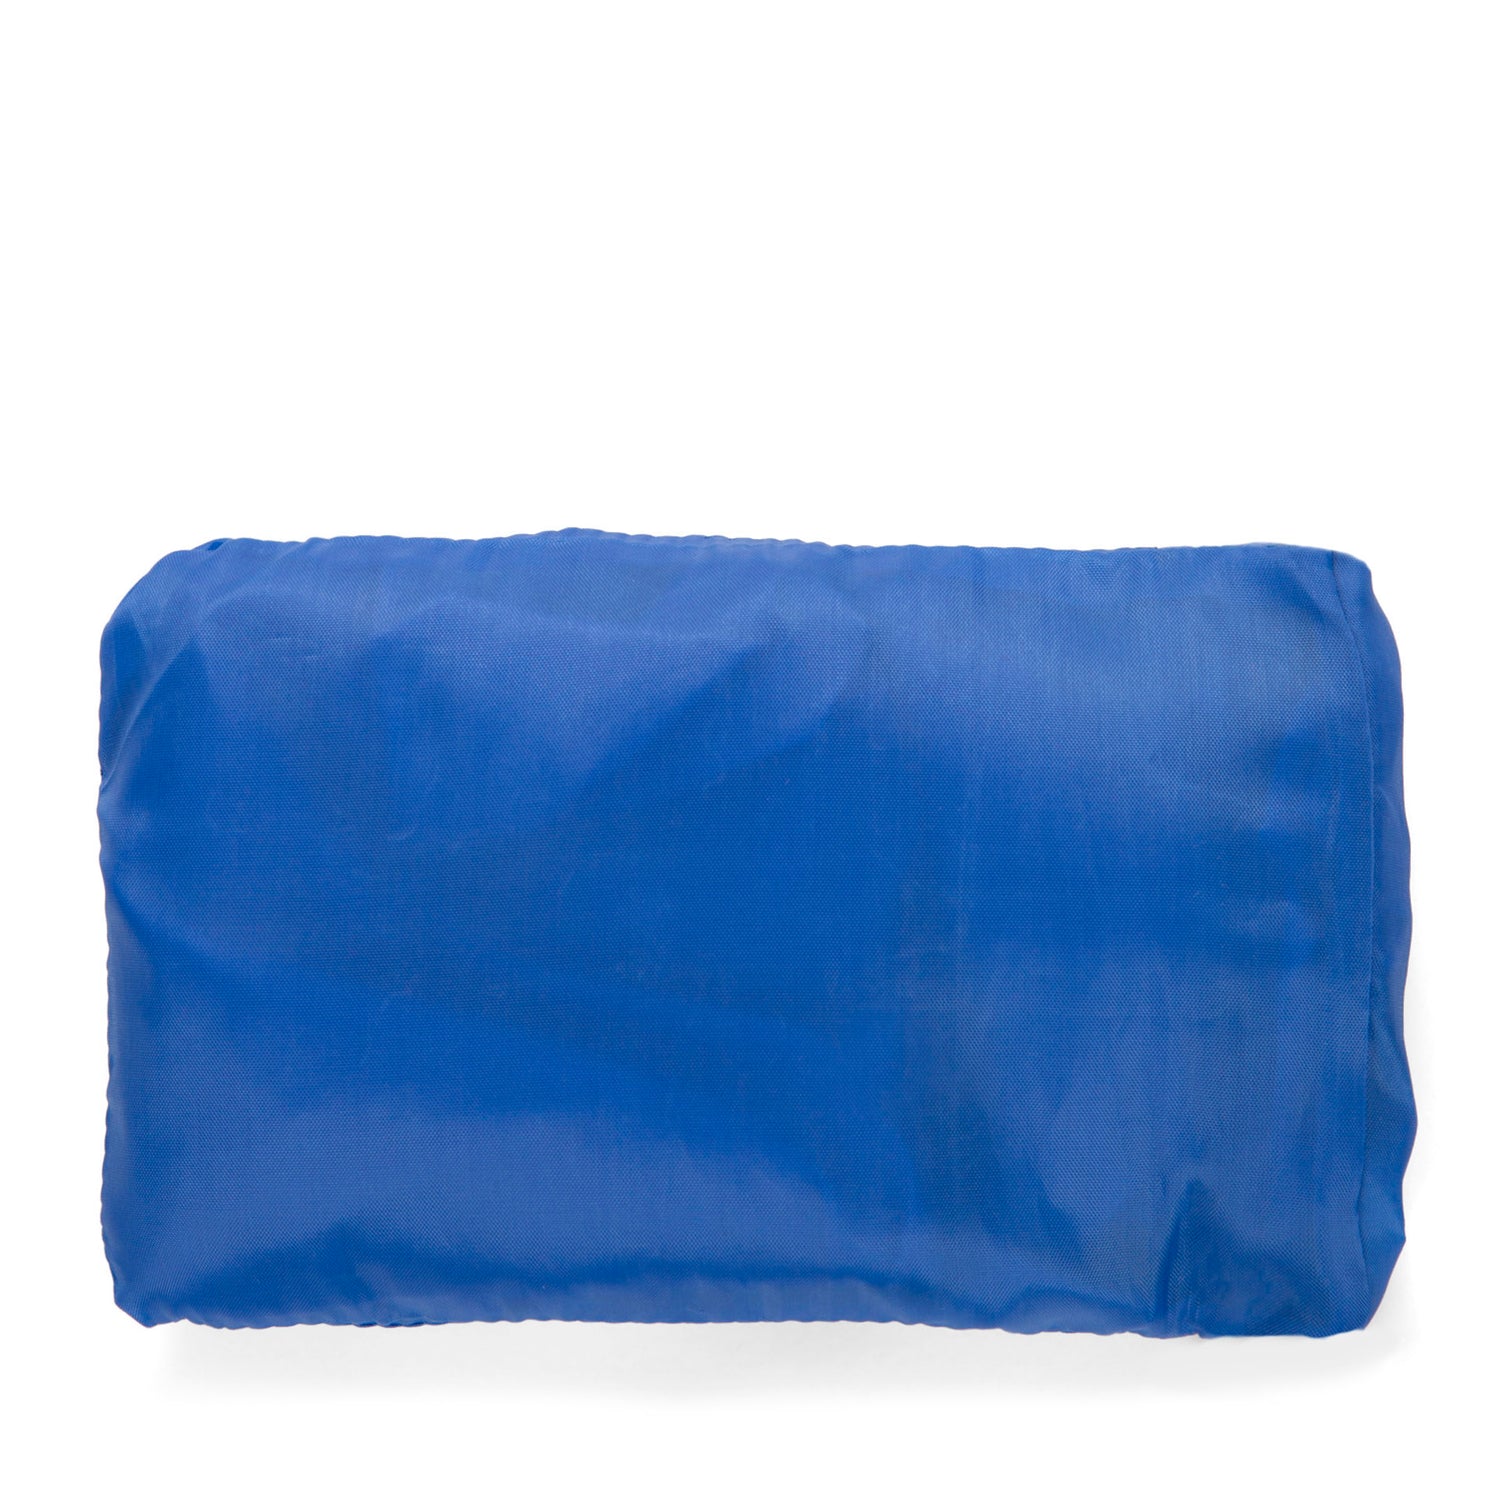 Solid Blue Reusable Bag - Bentley